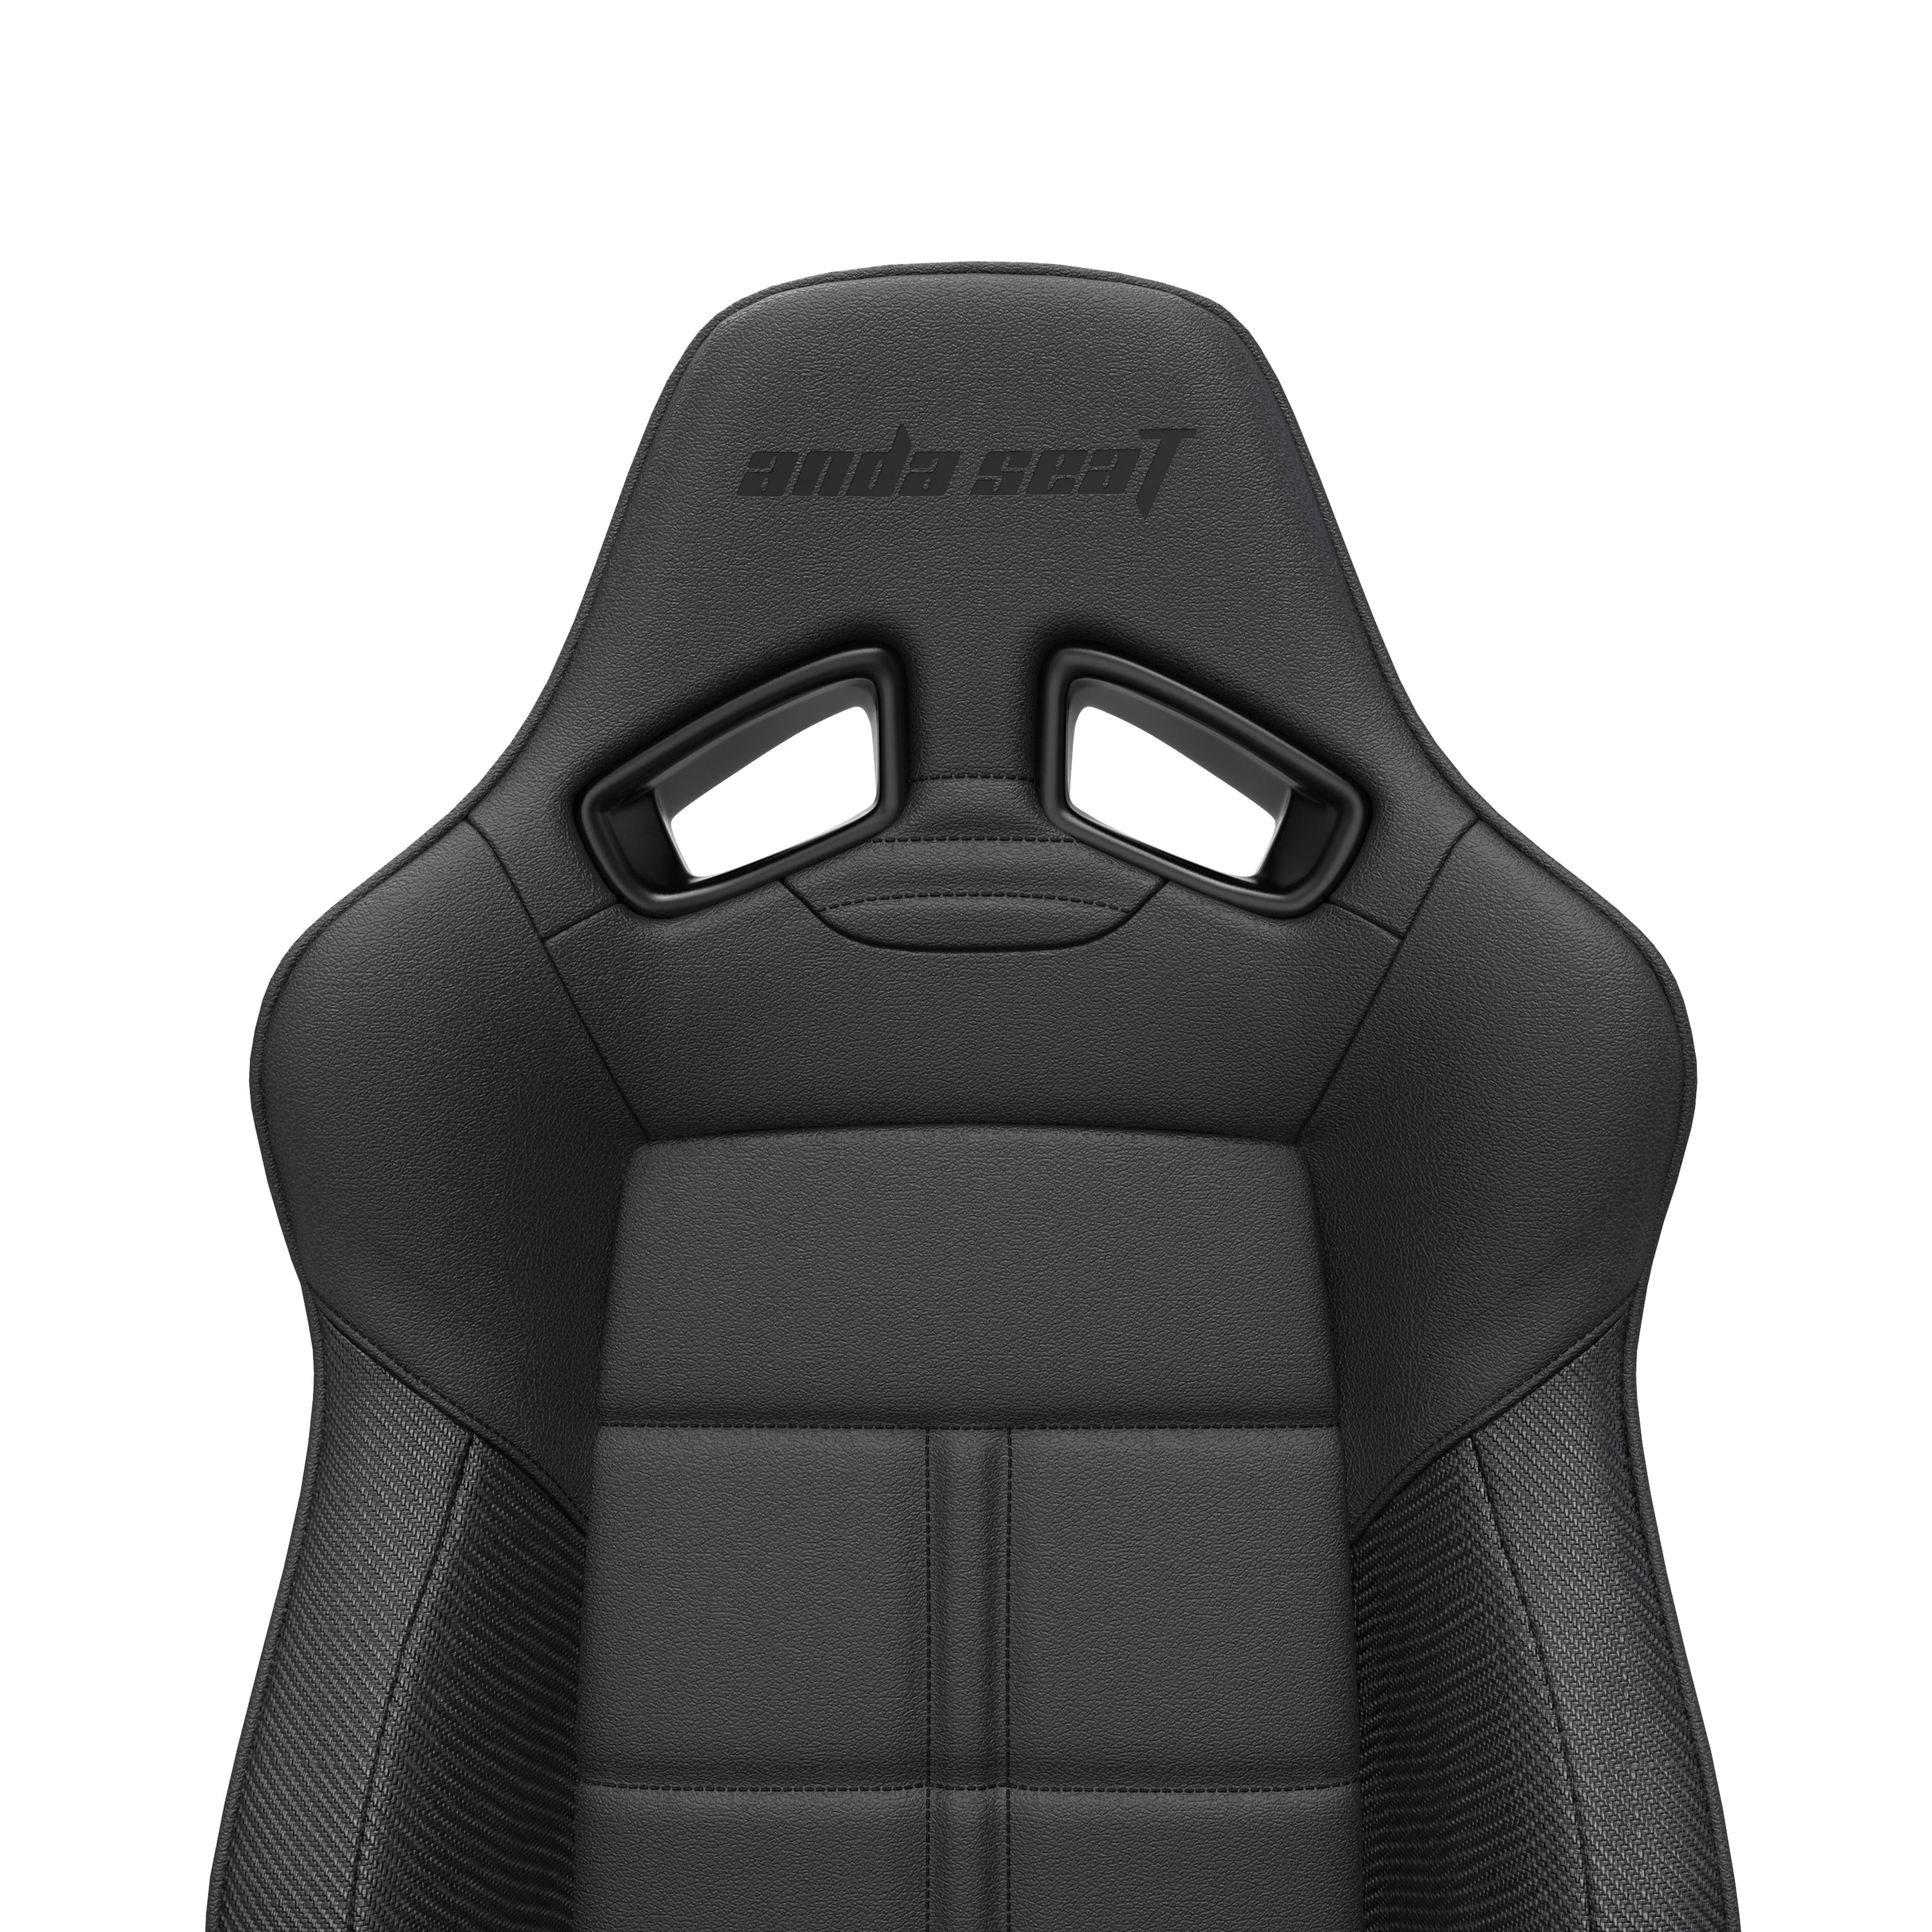 Anda Seat Dark Demon Dragon Premium Black Gaming Chair